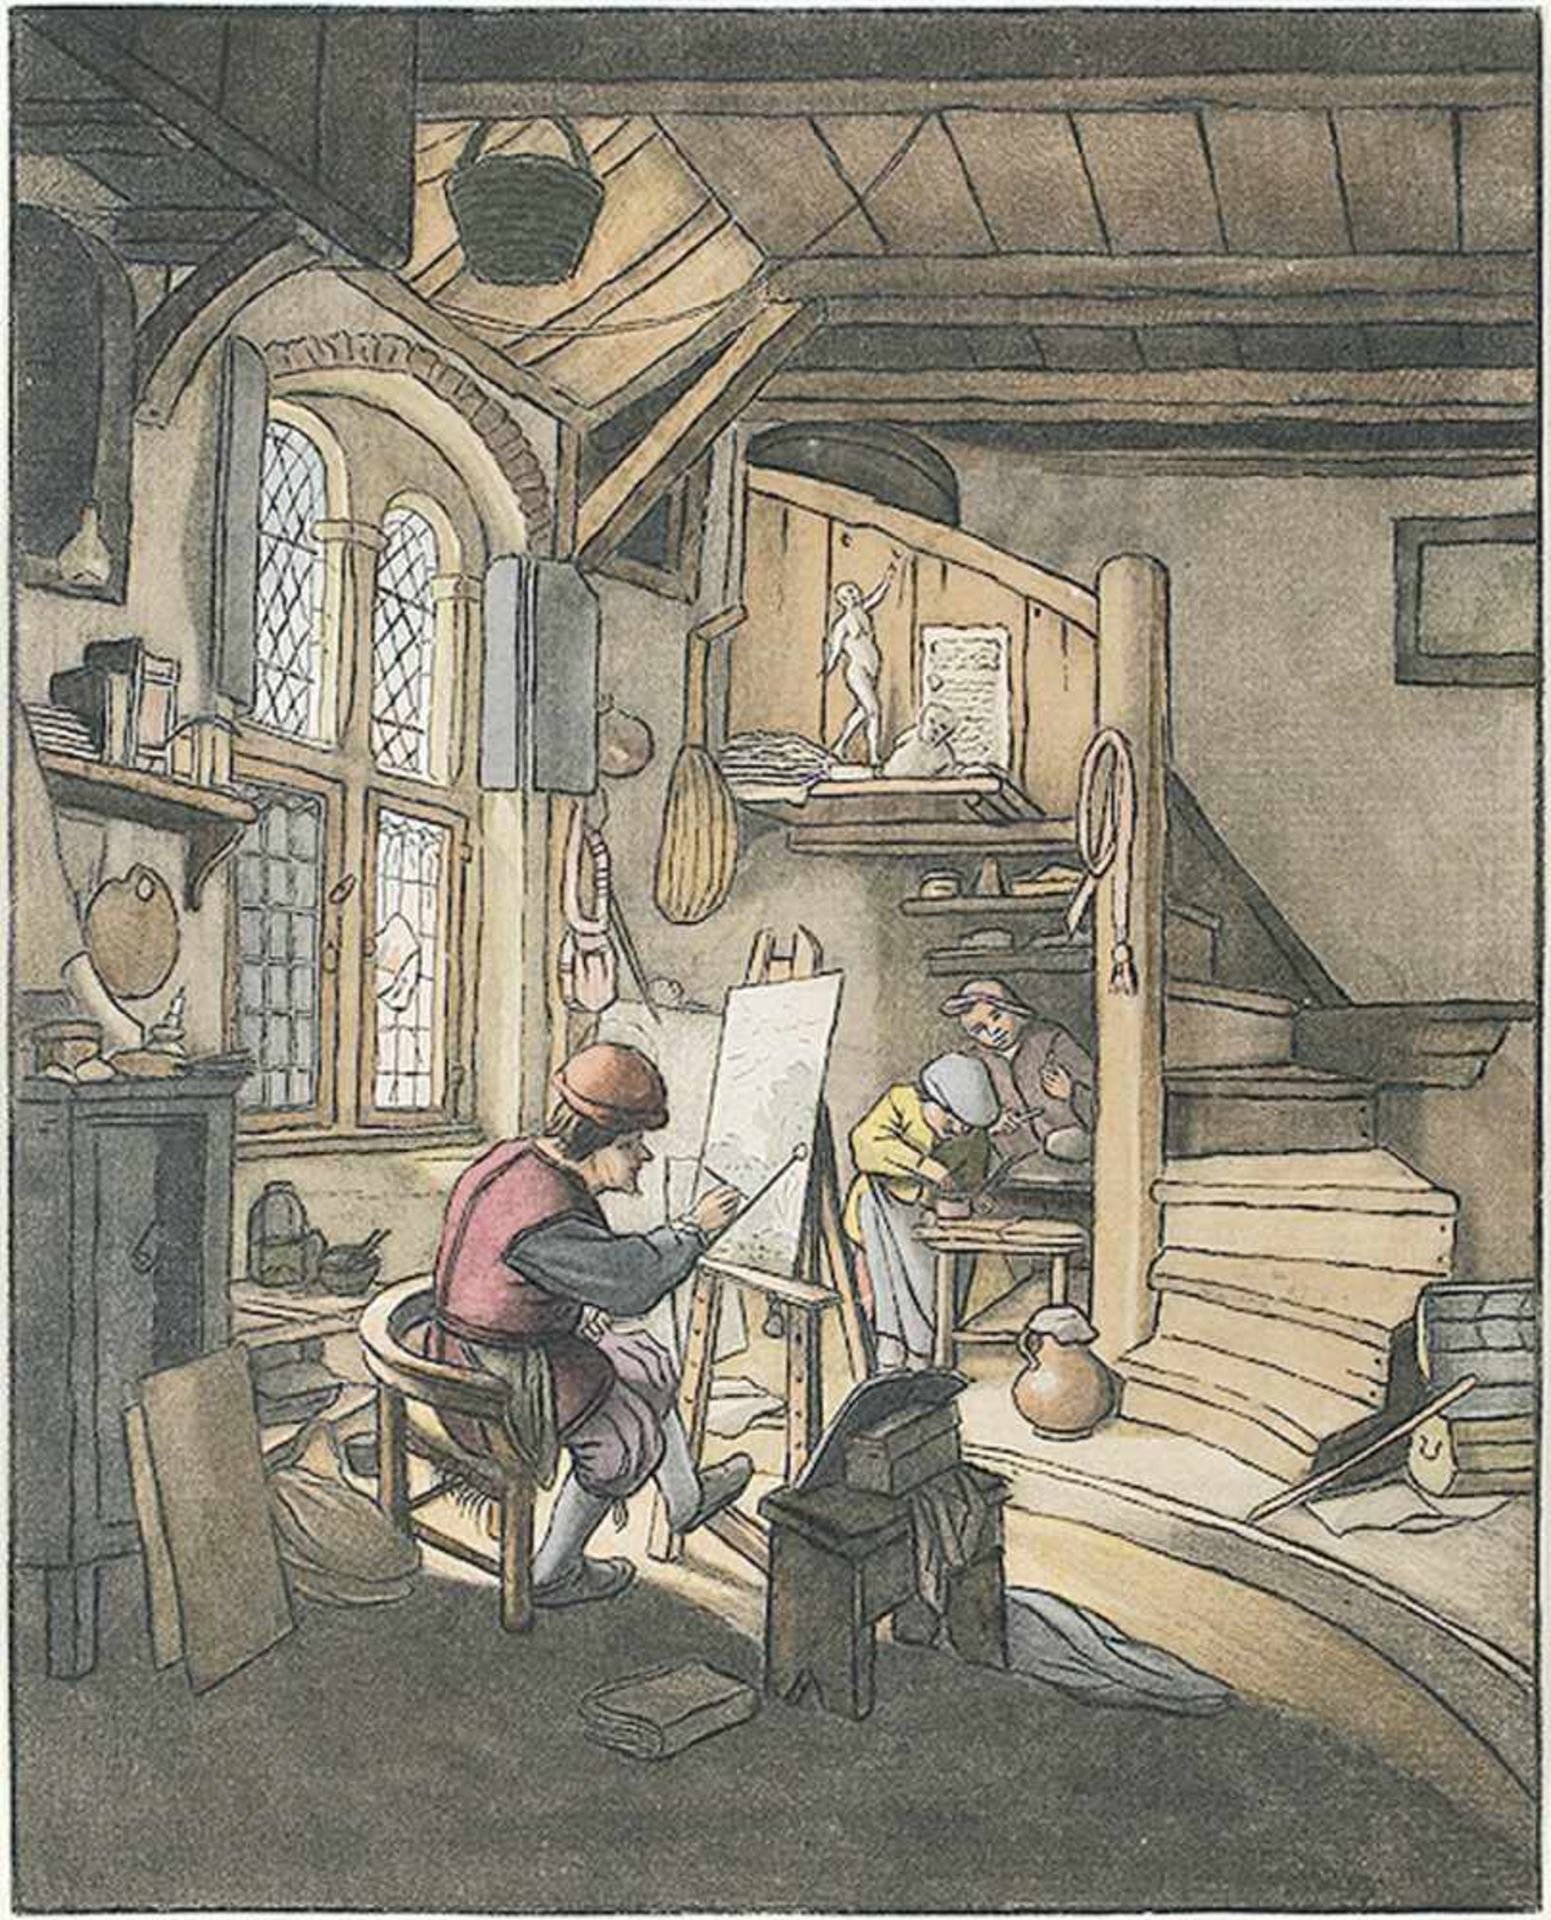 ADRIAEN VAN OSTADE 1610 - Haarlem - 1684Der Maler. Aquarelliertes Schabkunstblatt von B. Schreuder